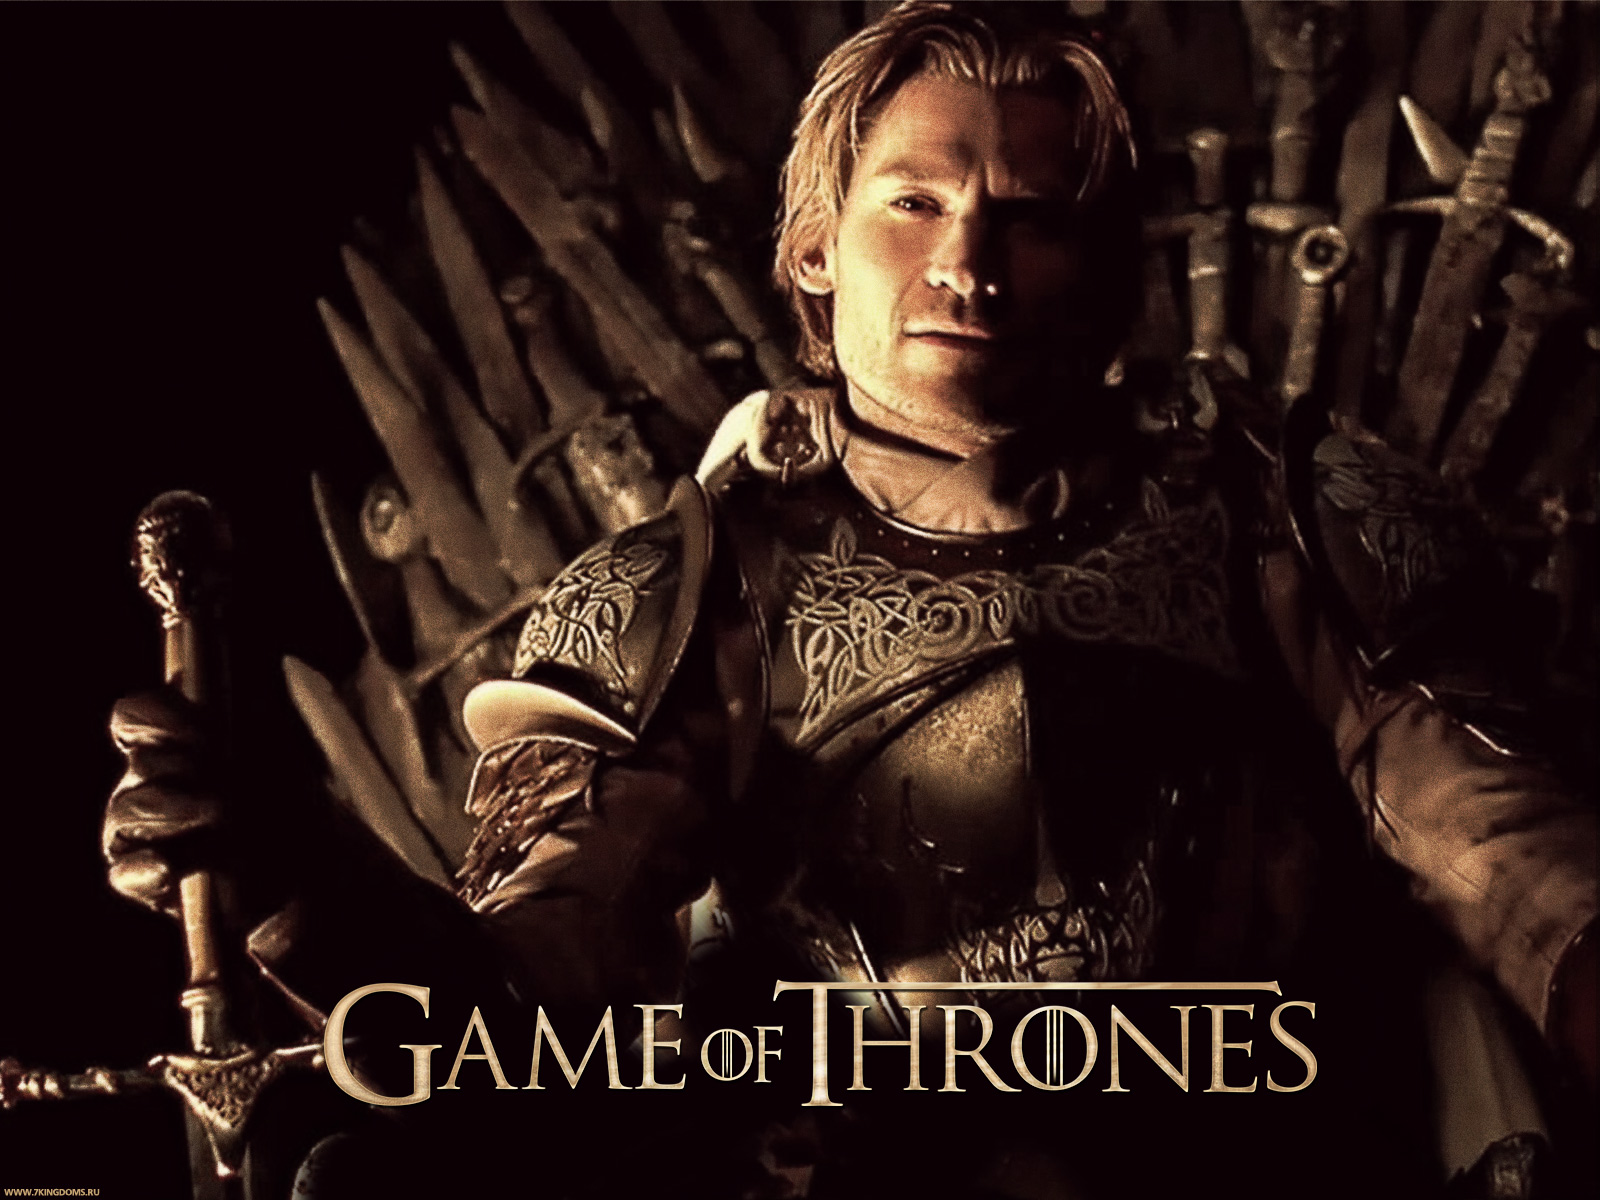 Jaime Lannister - Jaime Lannister On Iron Throne - HD Wallpaper 